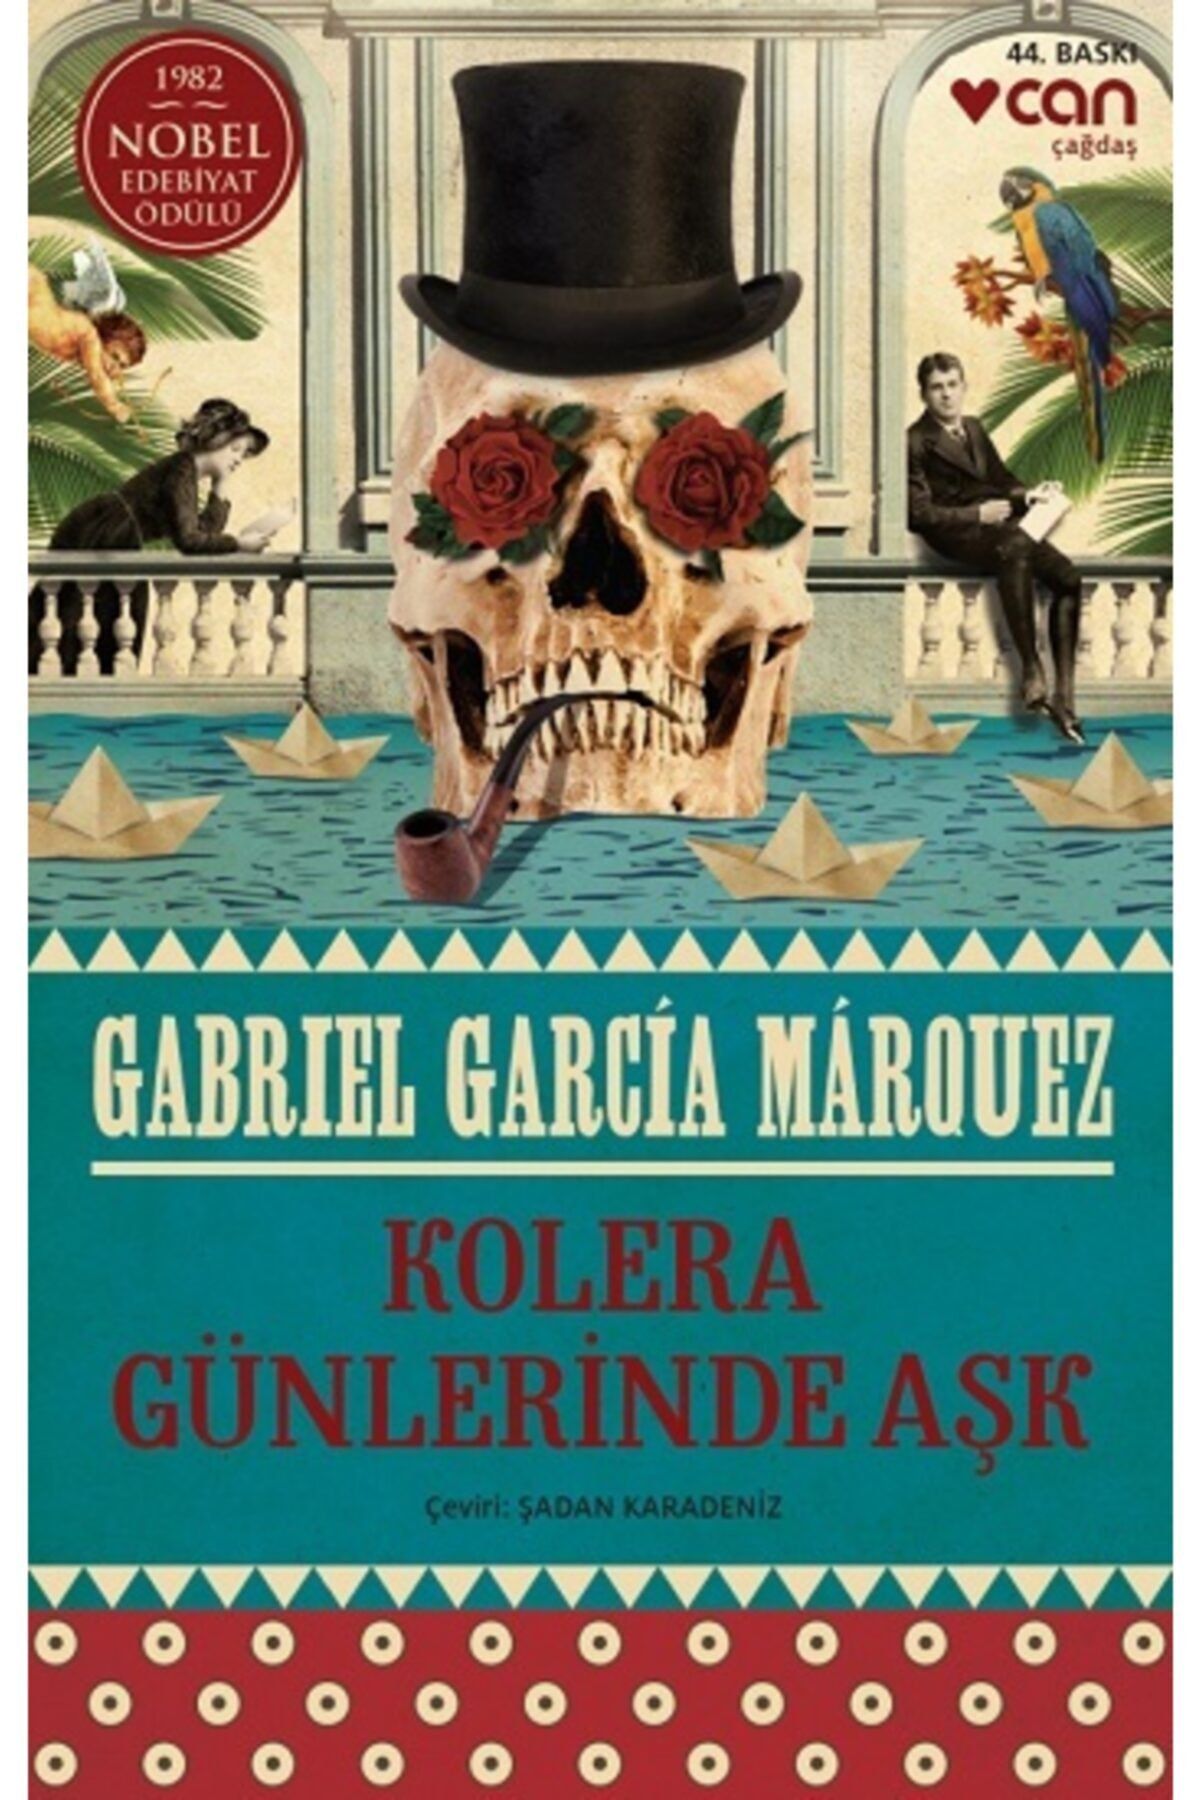 Can Yayınları Kolera Günlerinde Aşk: 1982 Nobel Edebiyat Ödülü / Gabriel Garcia Marquez